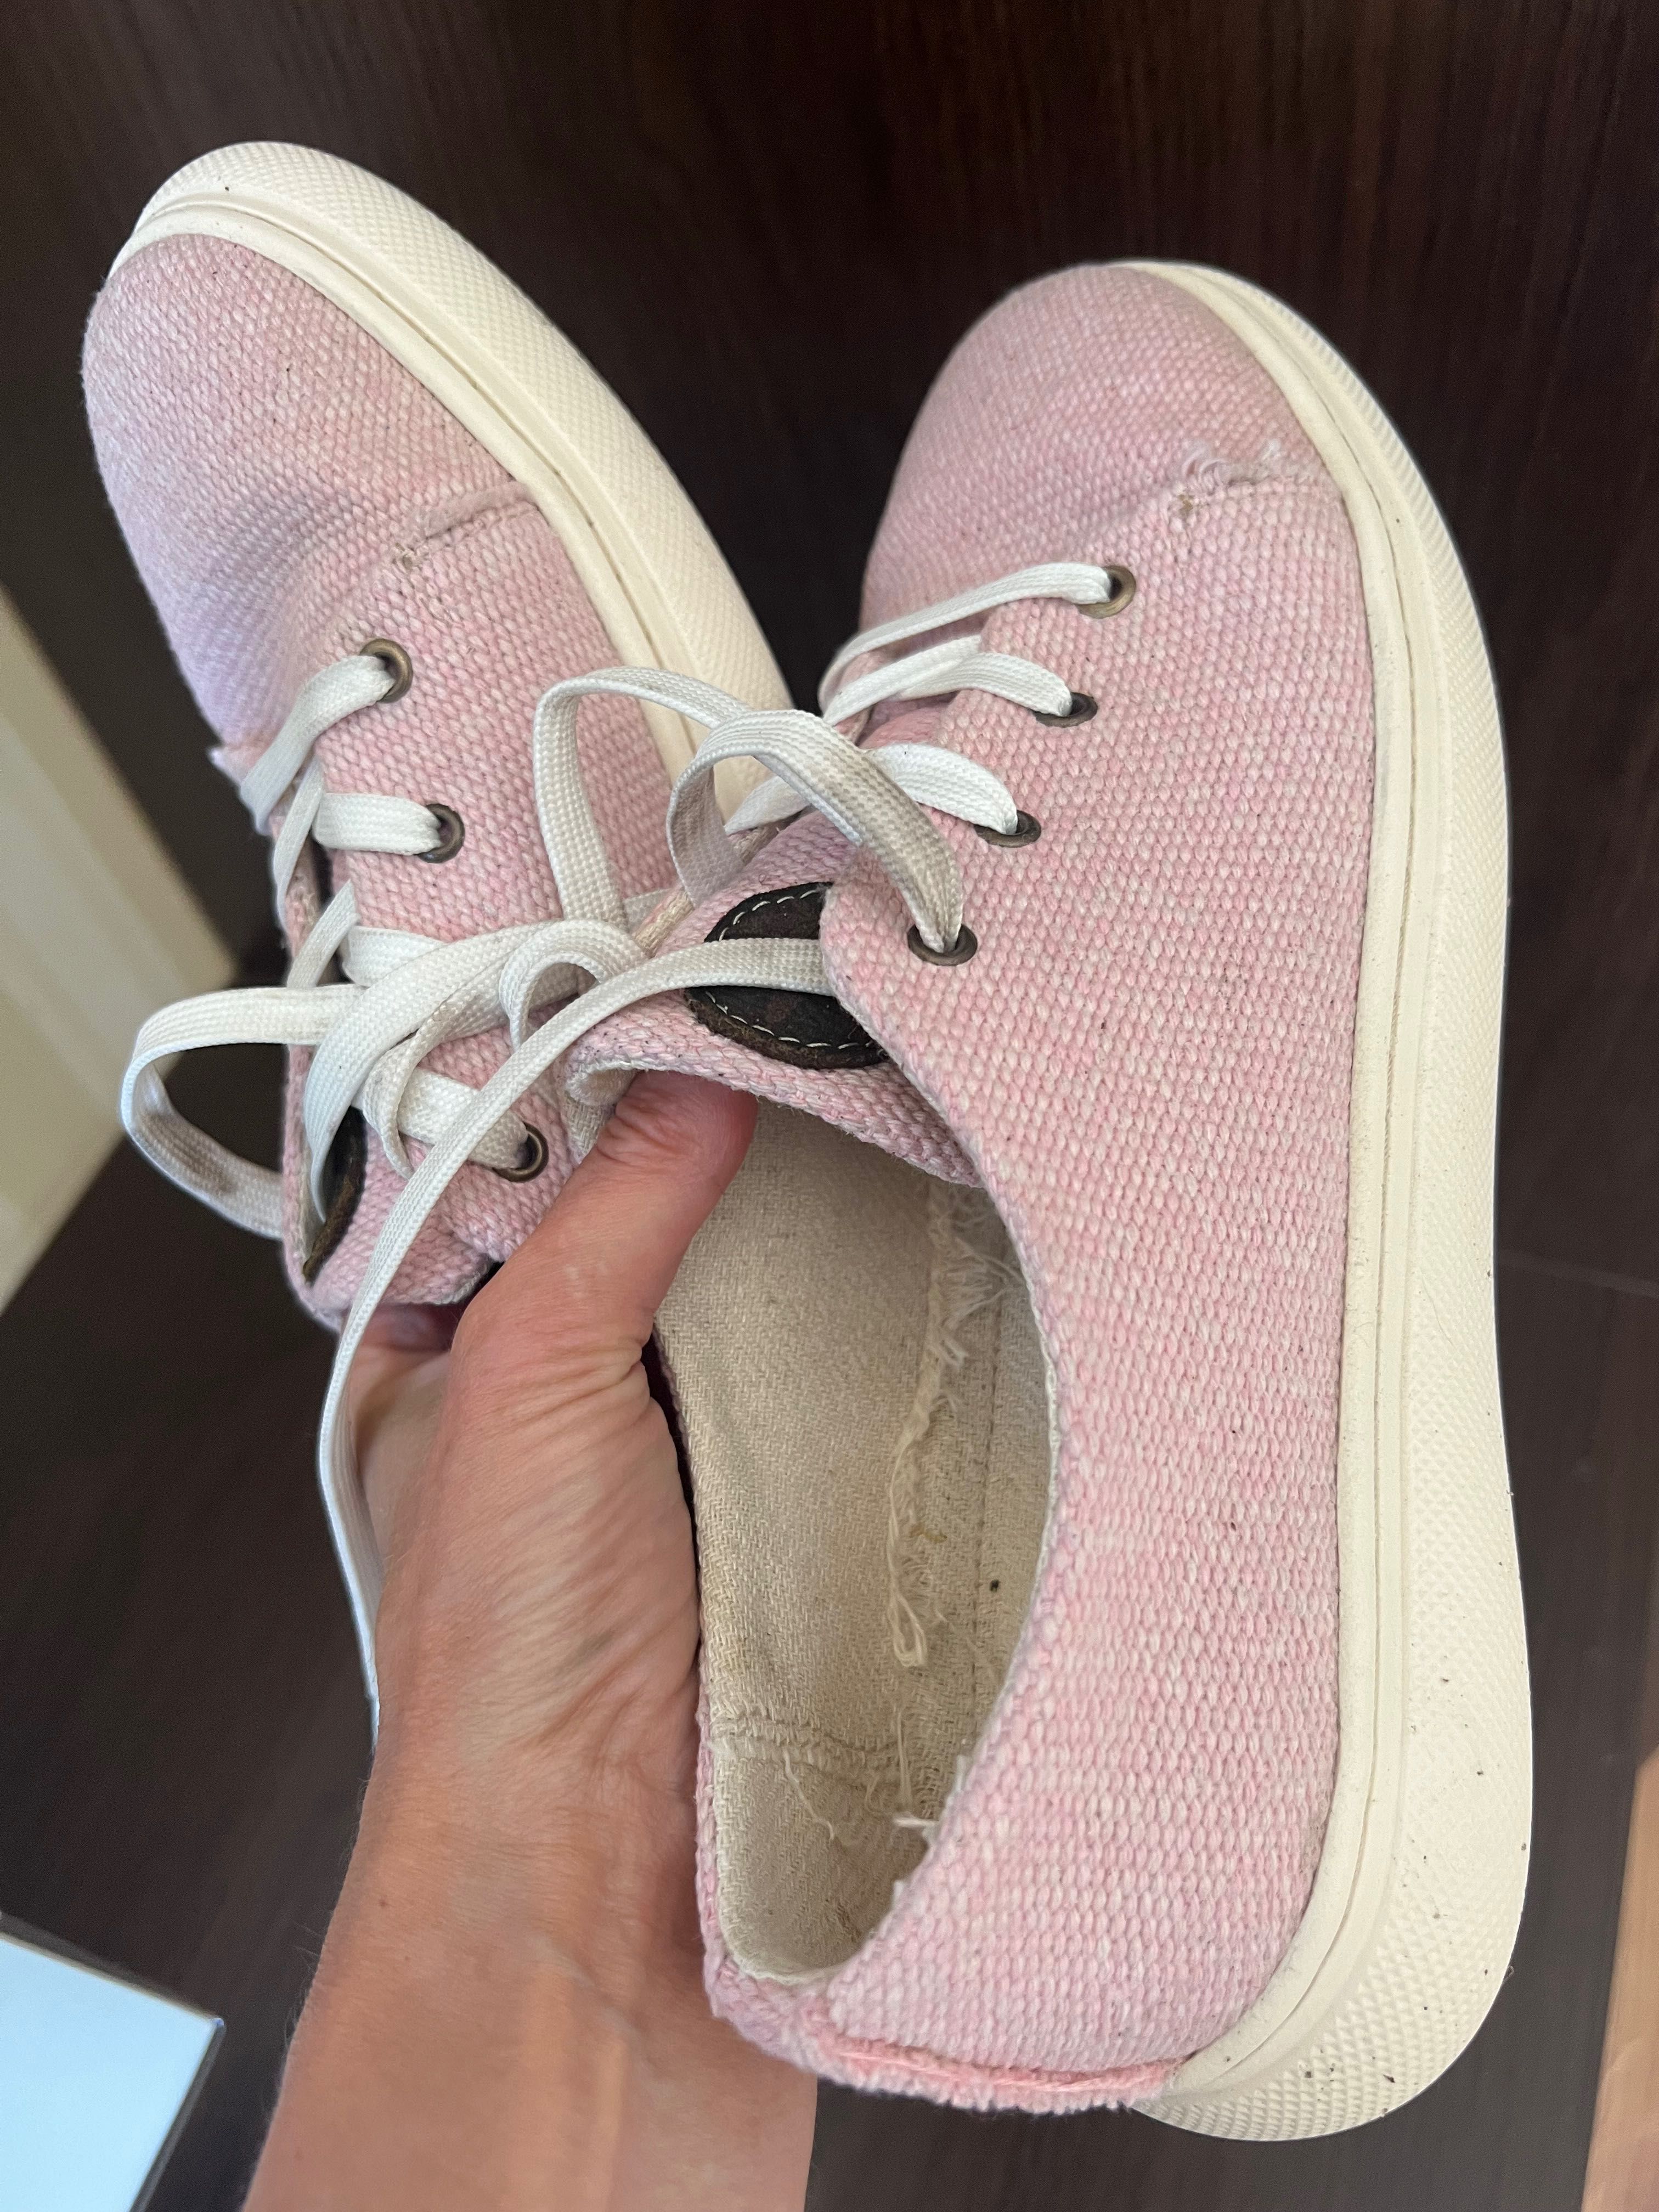 Майже нове конопляне жіноче взуття кросівки/кеди рожеві жіночі 38 р.